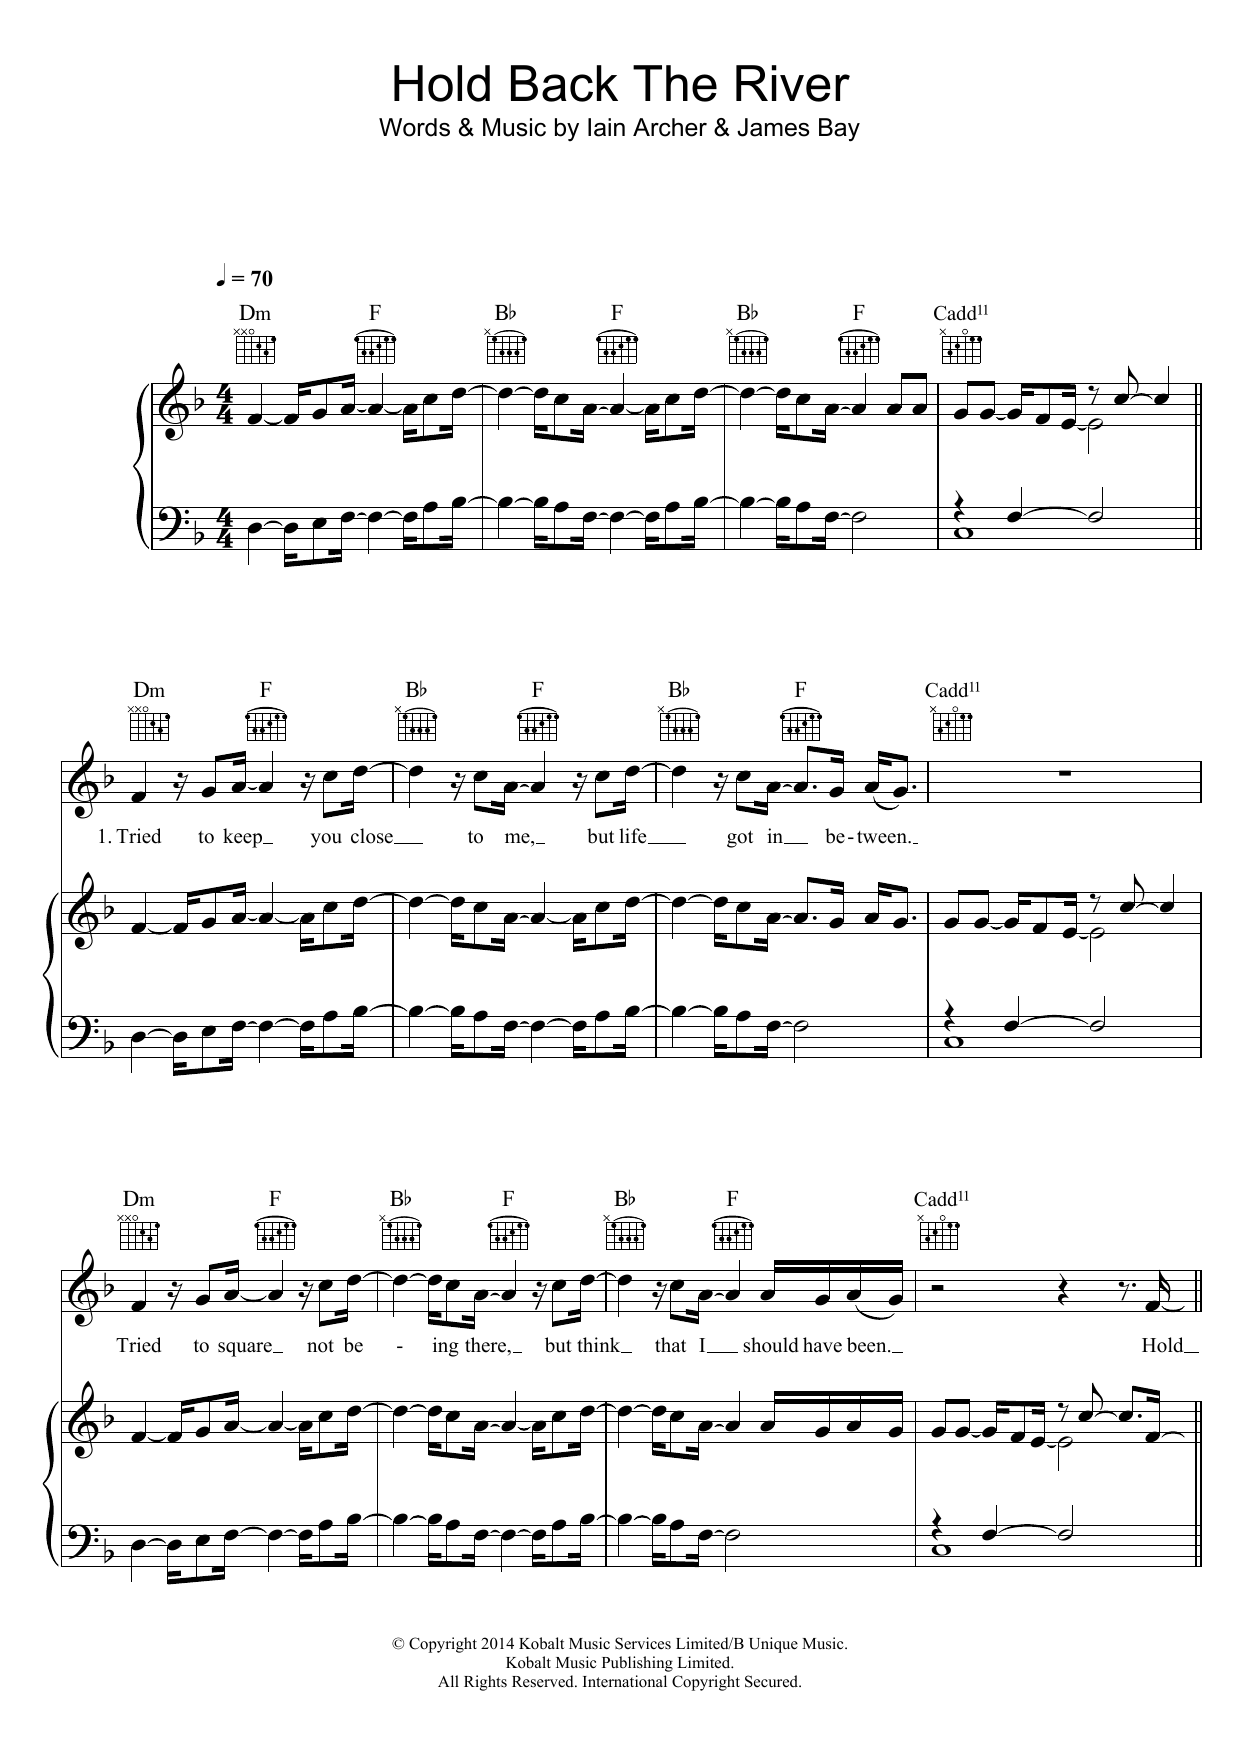 James Bay Hold Back The River Sheet Music Notes & Chords for Ukulele Lyrics & Chords - Download or Print PDF